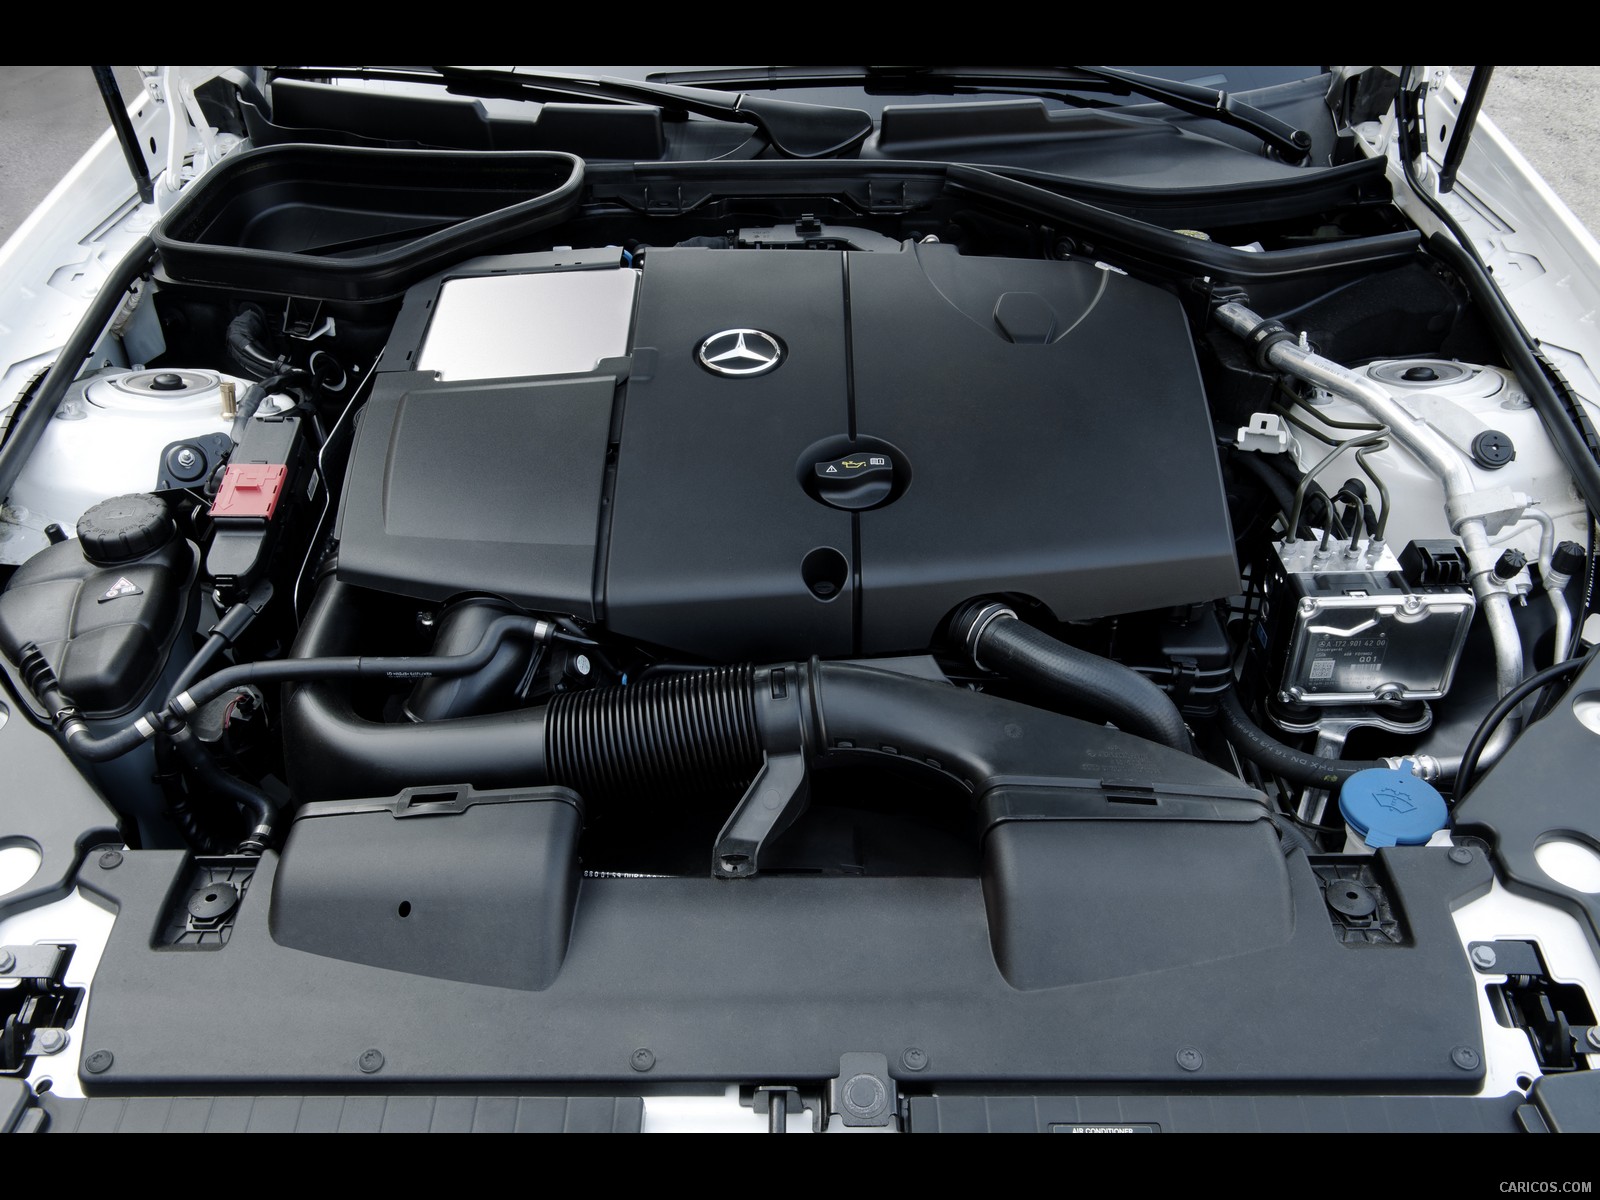 Mercedes-Benz SLK 250 CDI (2012)  - Engine, #10 of 15